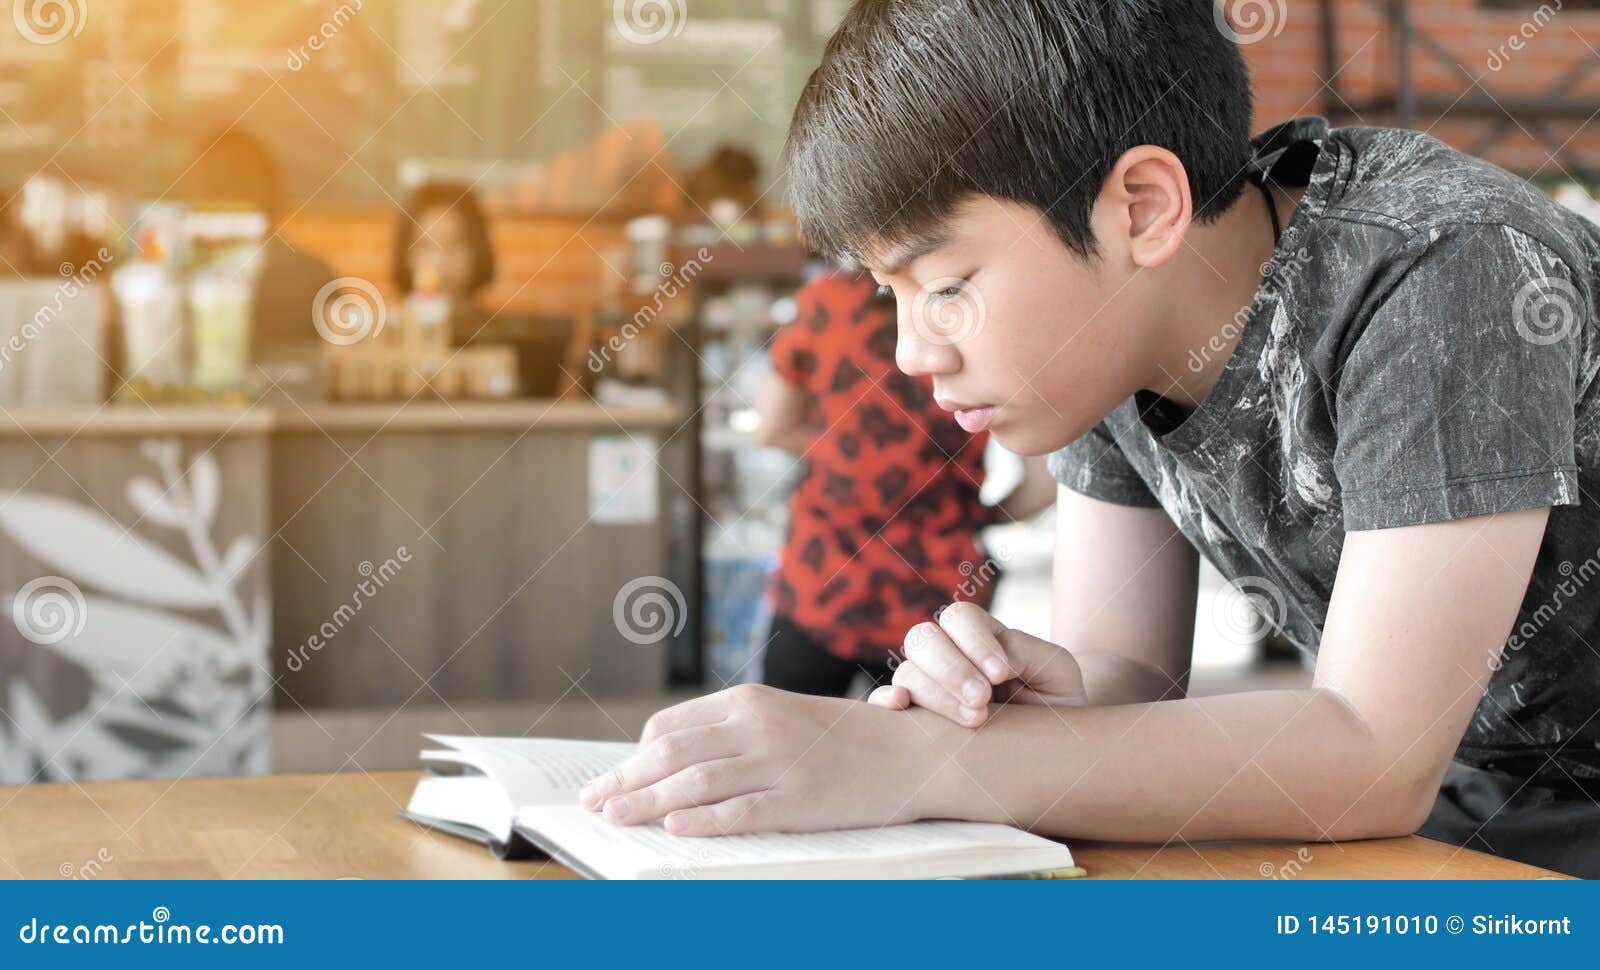 Китайский мальчик читает книгу gif.